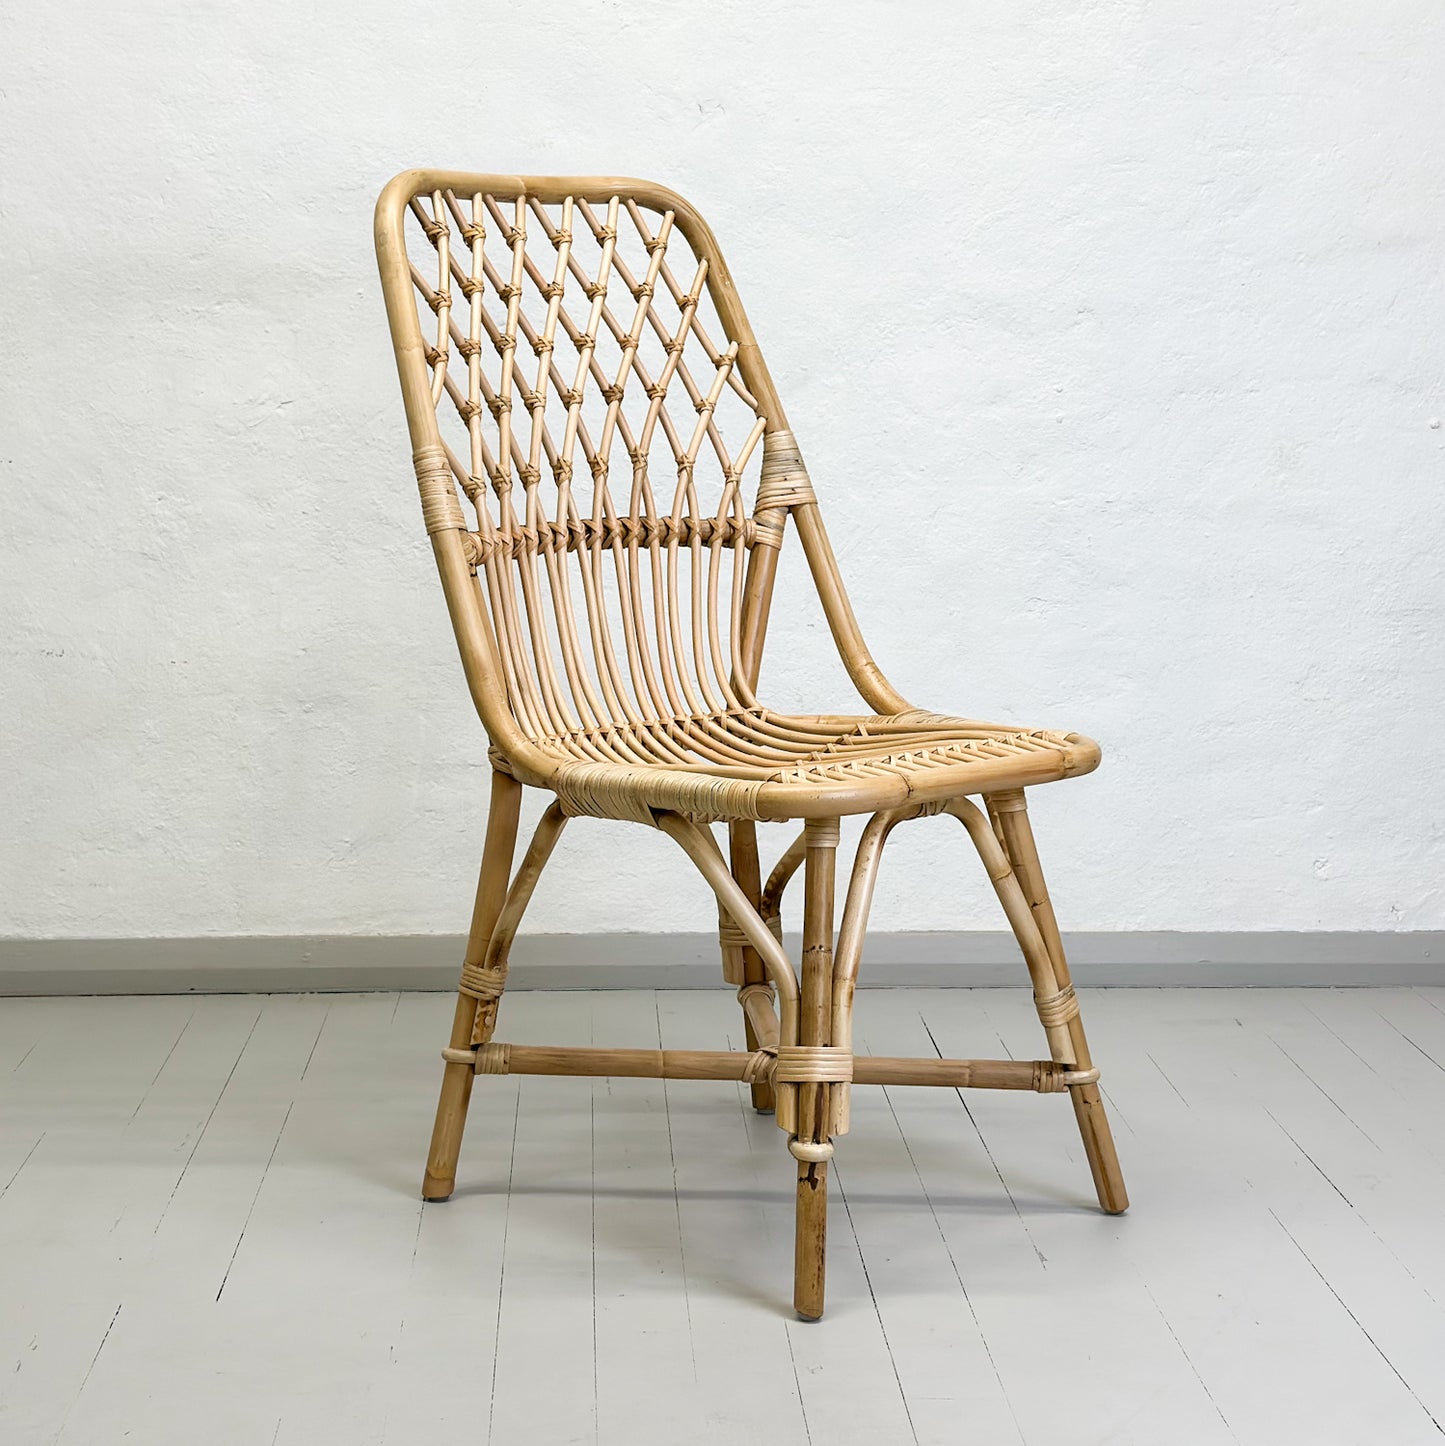 Retro Cane Chair